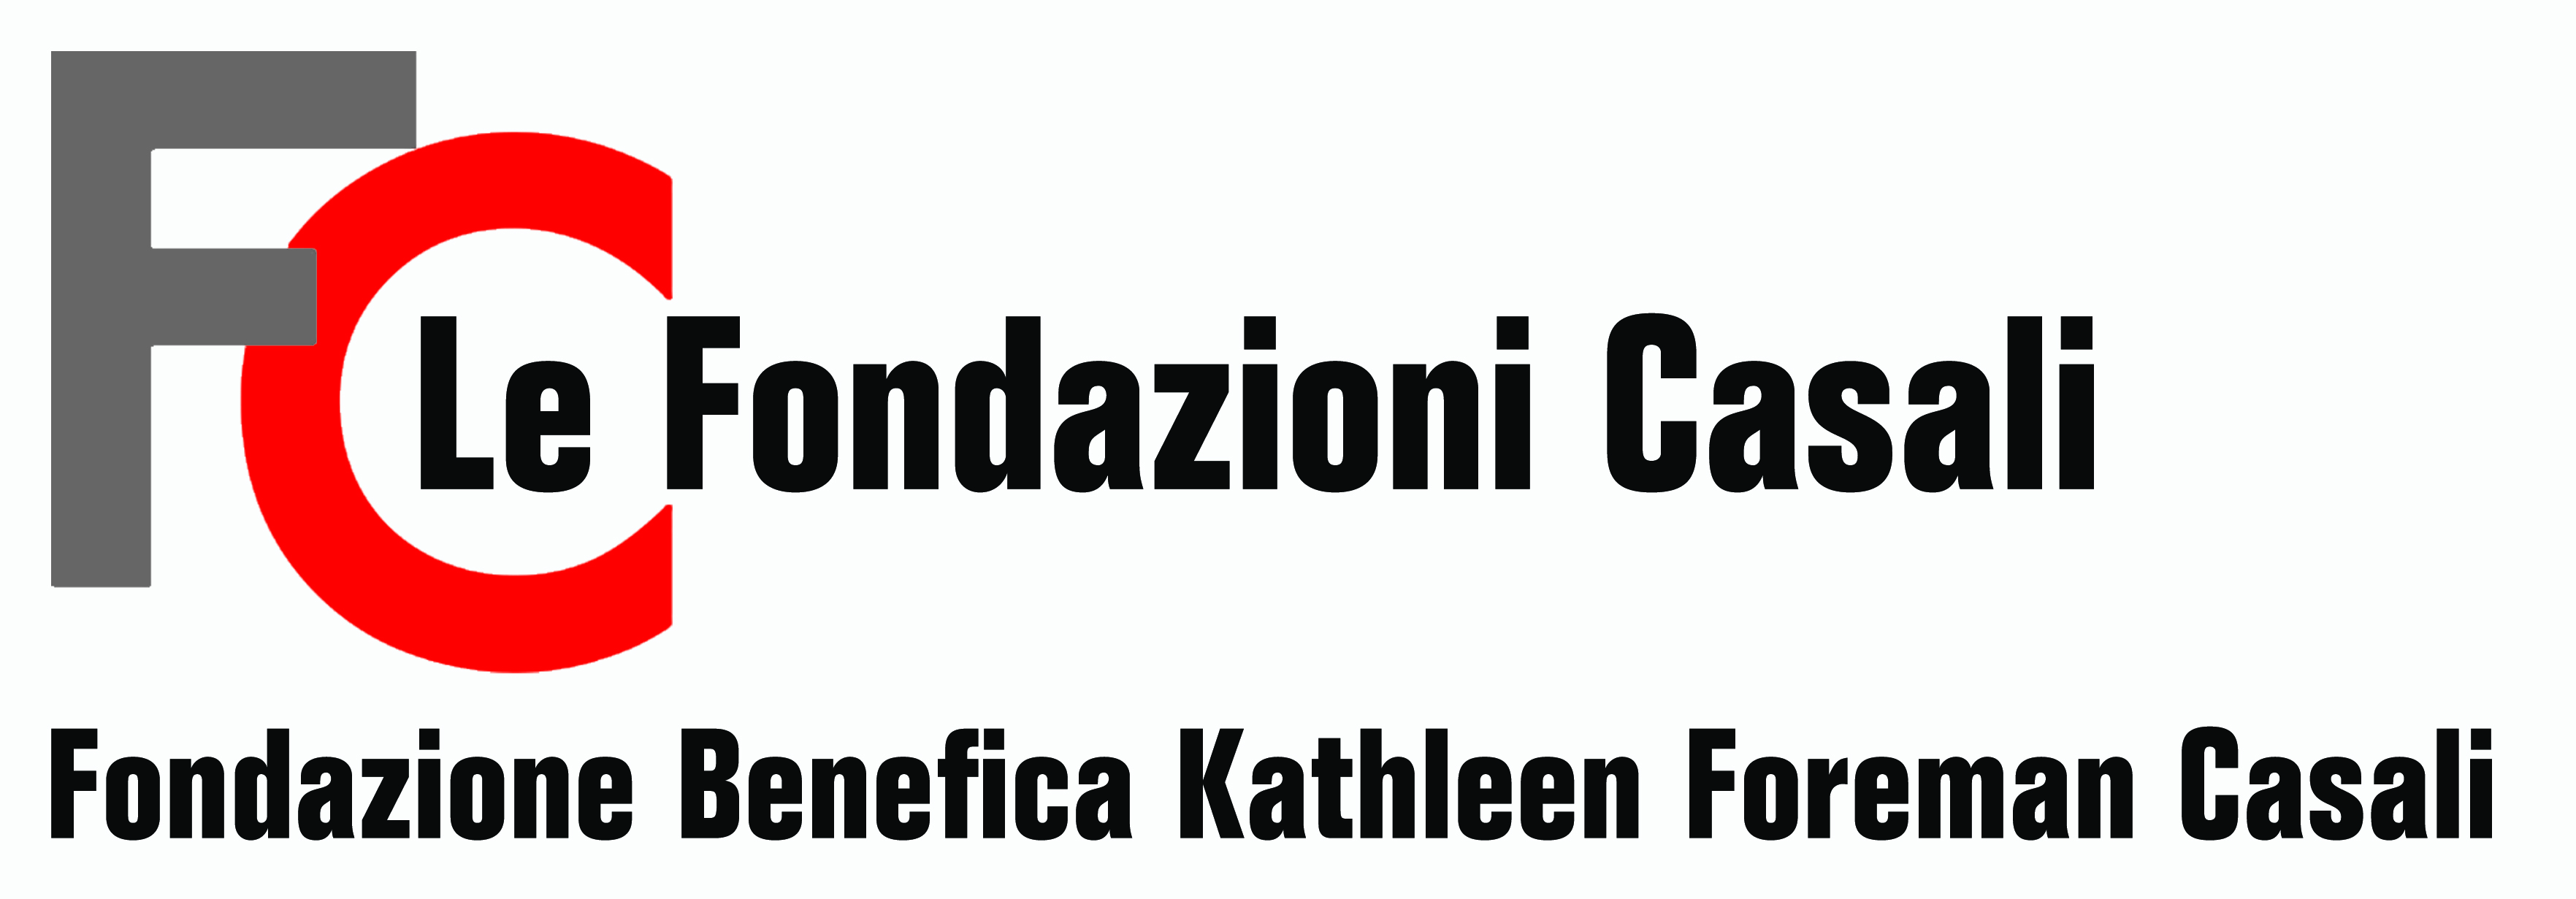 Fondazione Casali - Logo